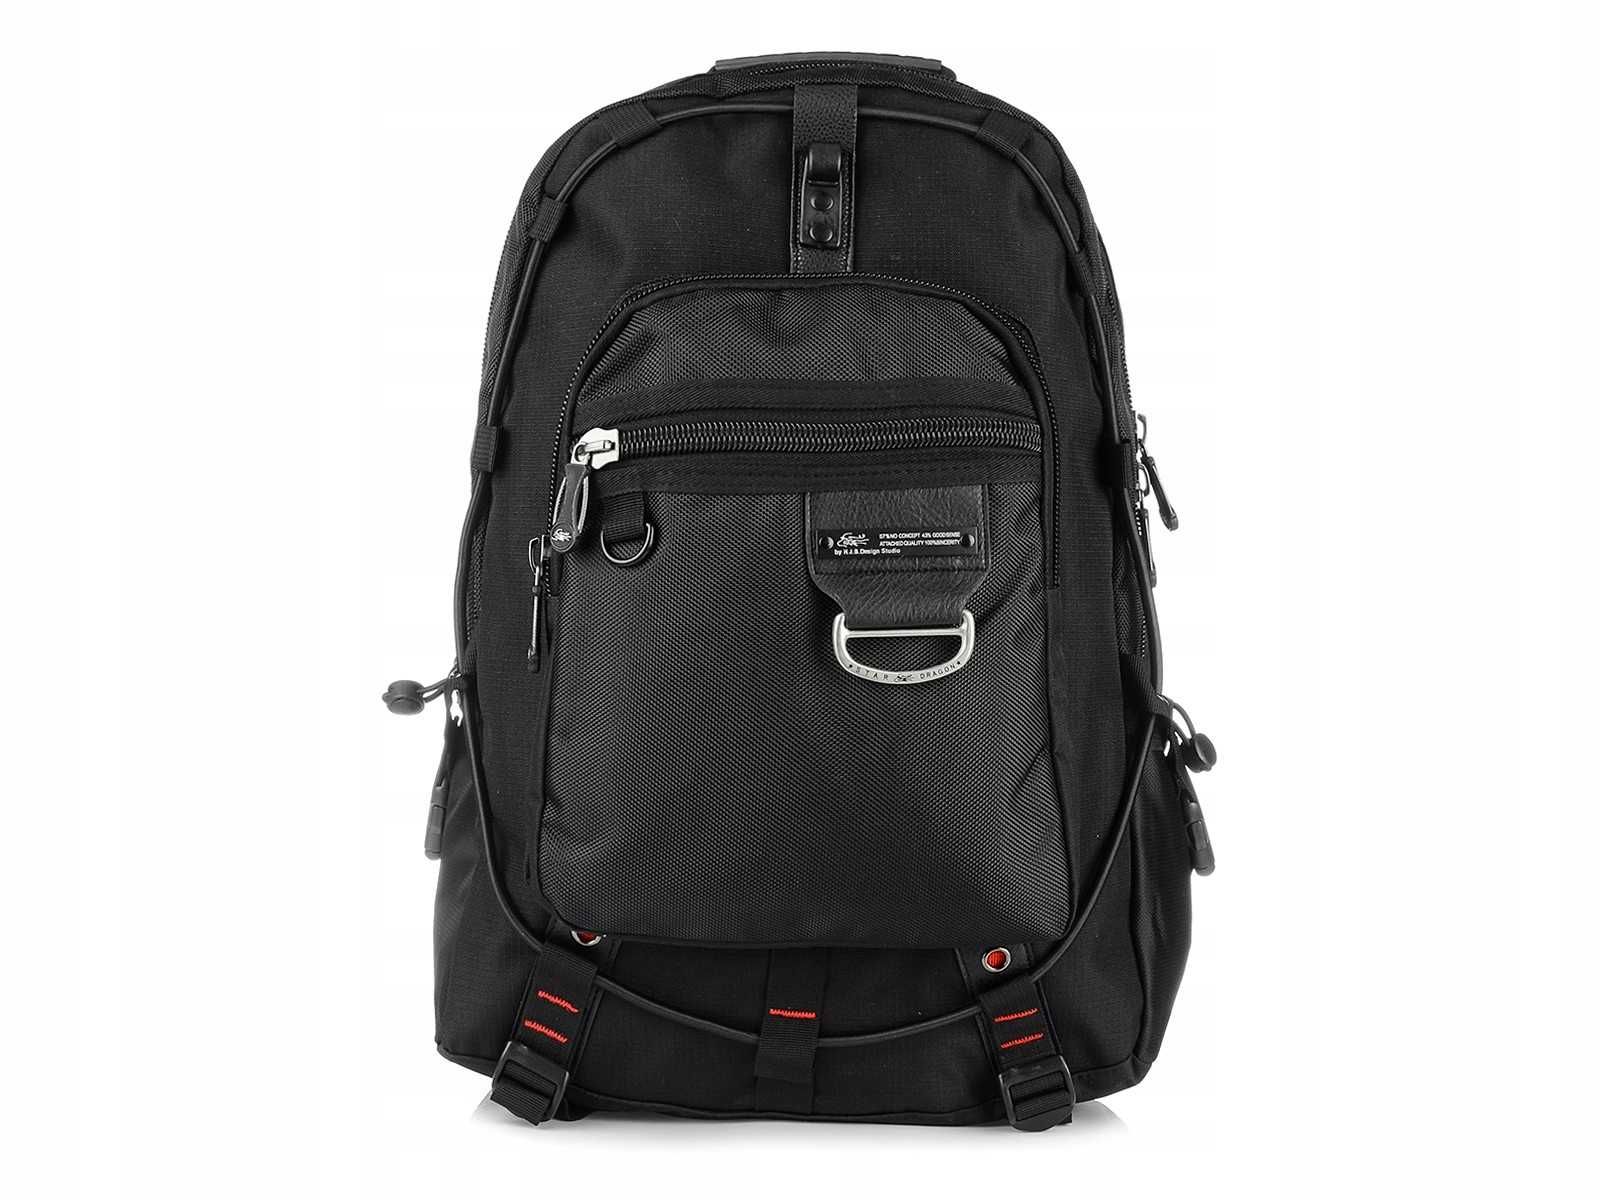 Czarny plecak miejski, pojemny na laptop, torba na wycieczki